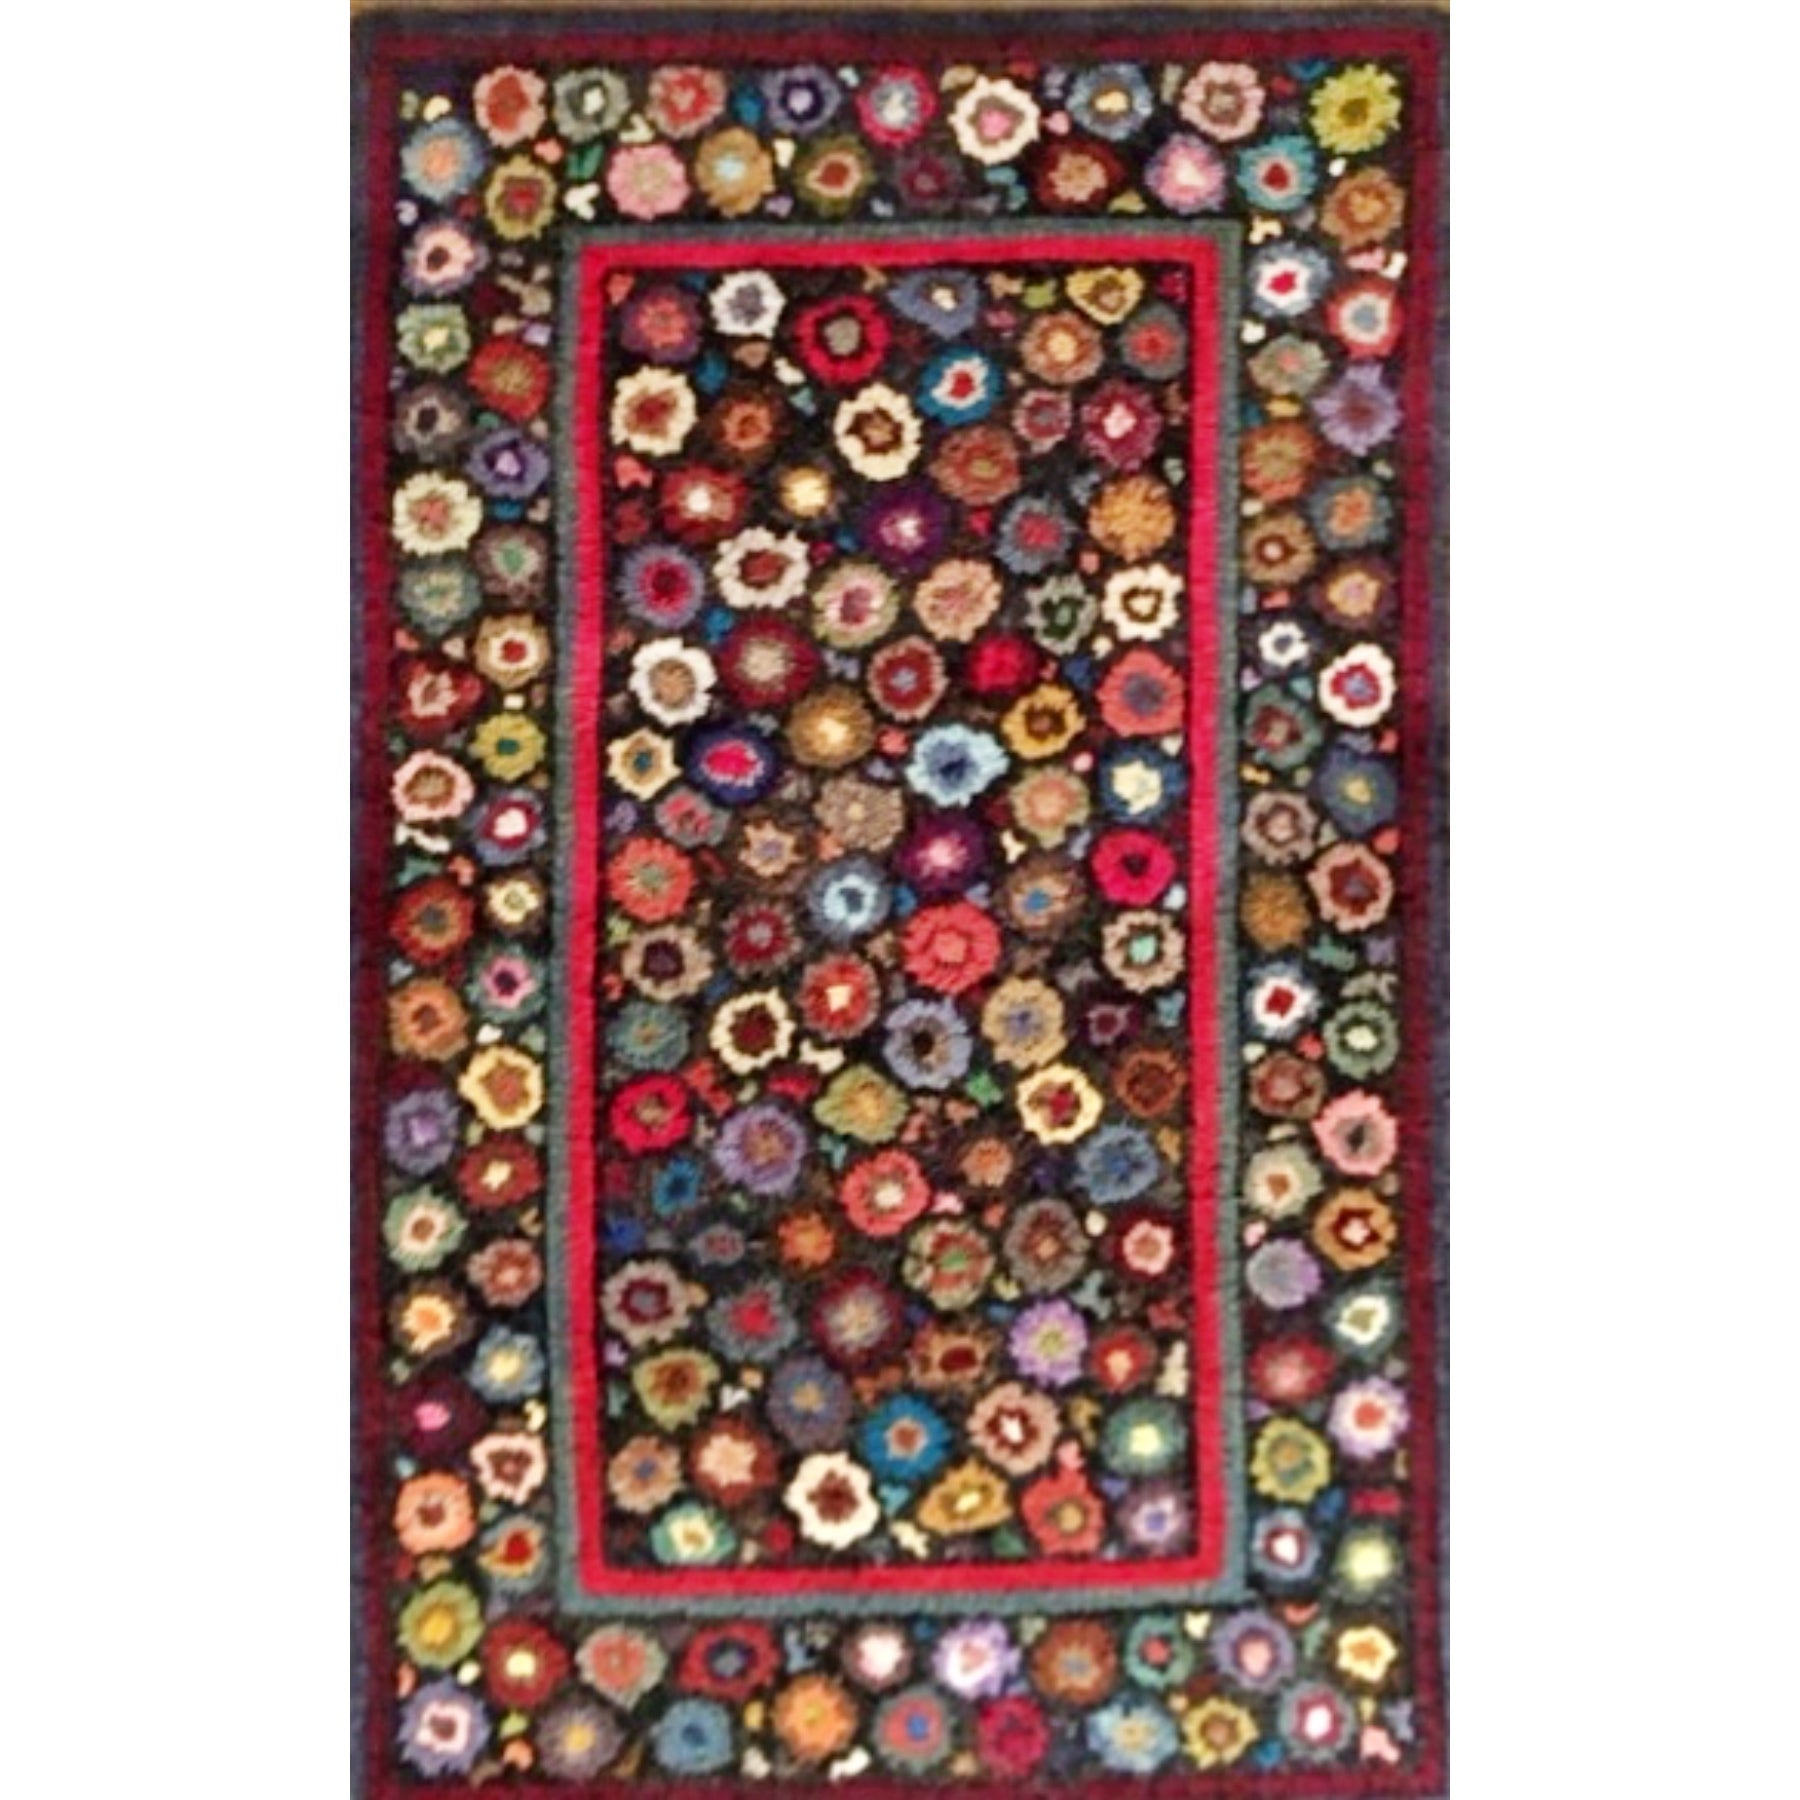 Mille Fleur, rug hooked by Karen Bellinger